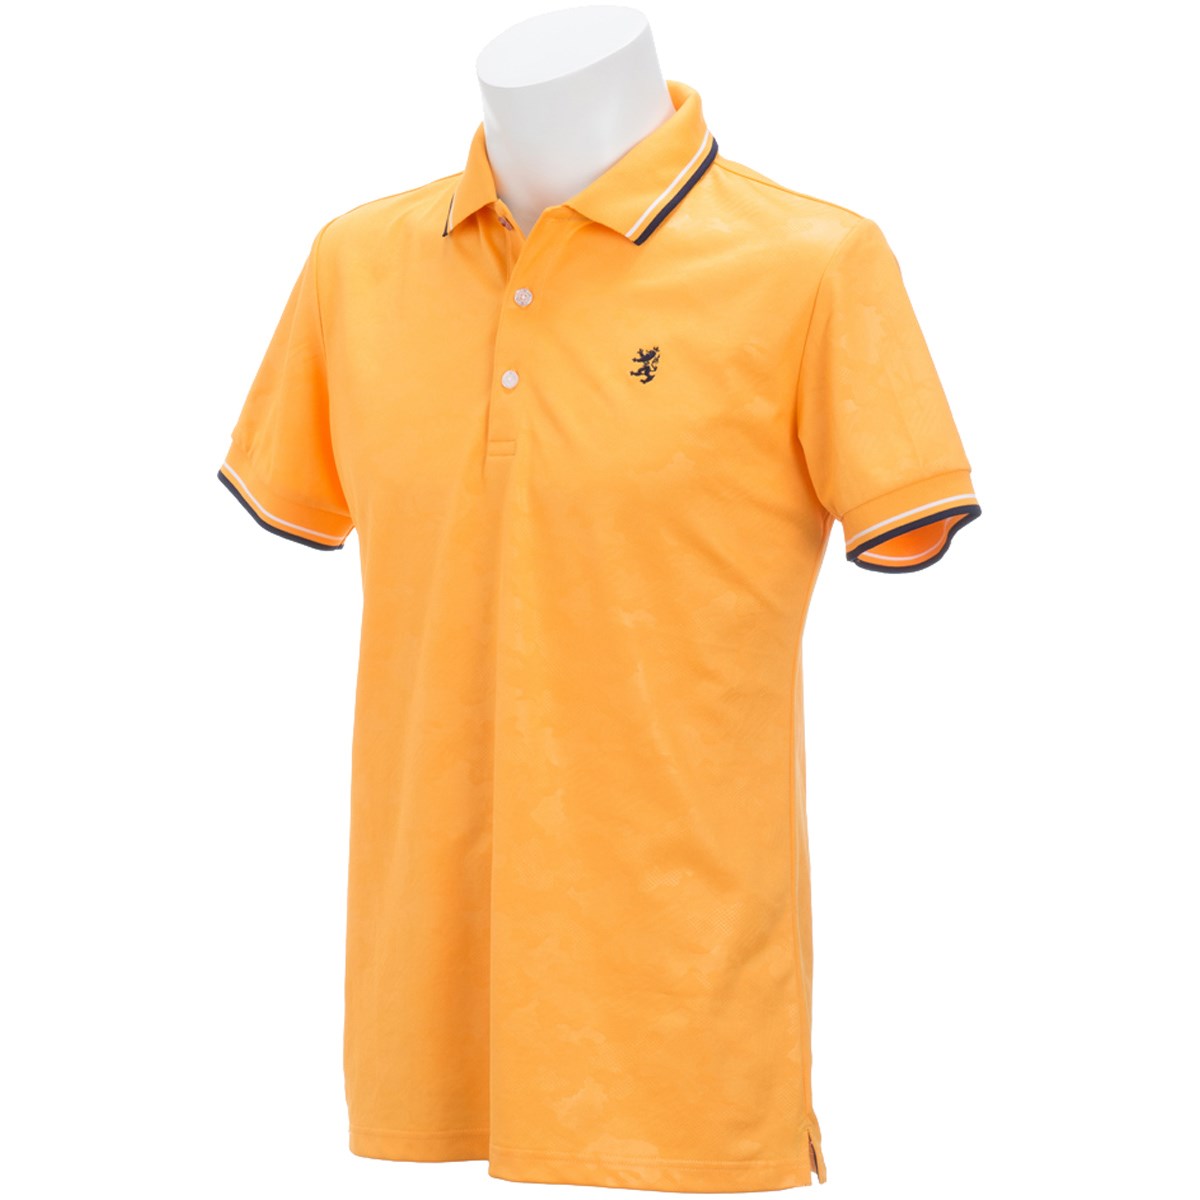  [アウトレット] [在庫限りのお買い得商品] アドミラル カモフラージュ エンボス 半袖ポロシャツ ゴルフウェア